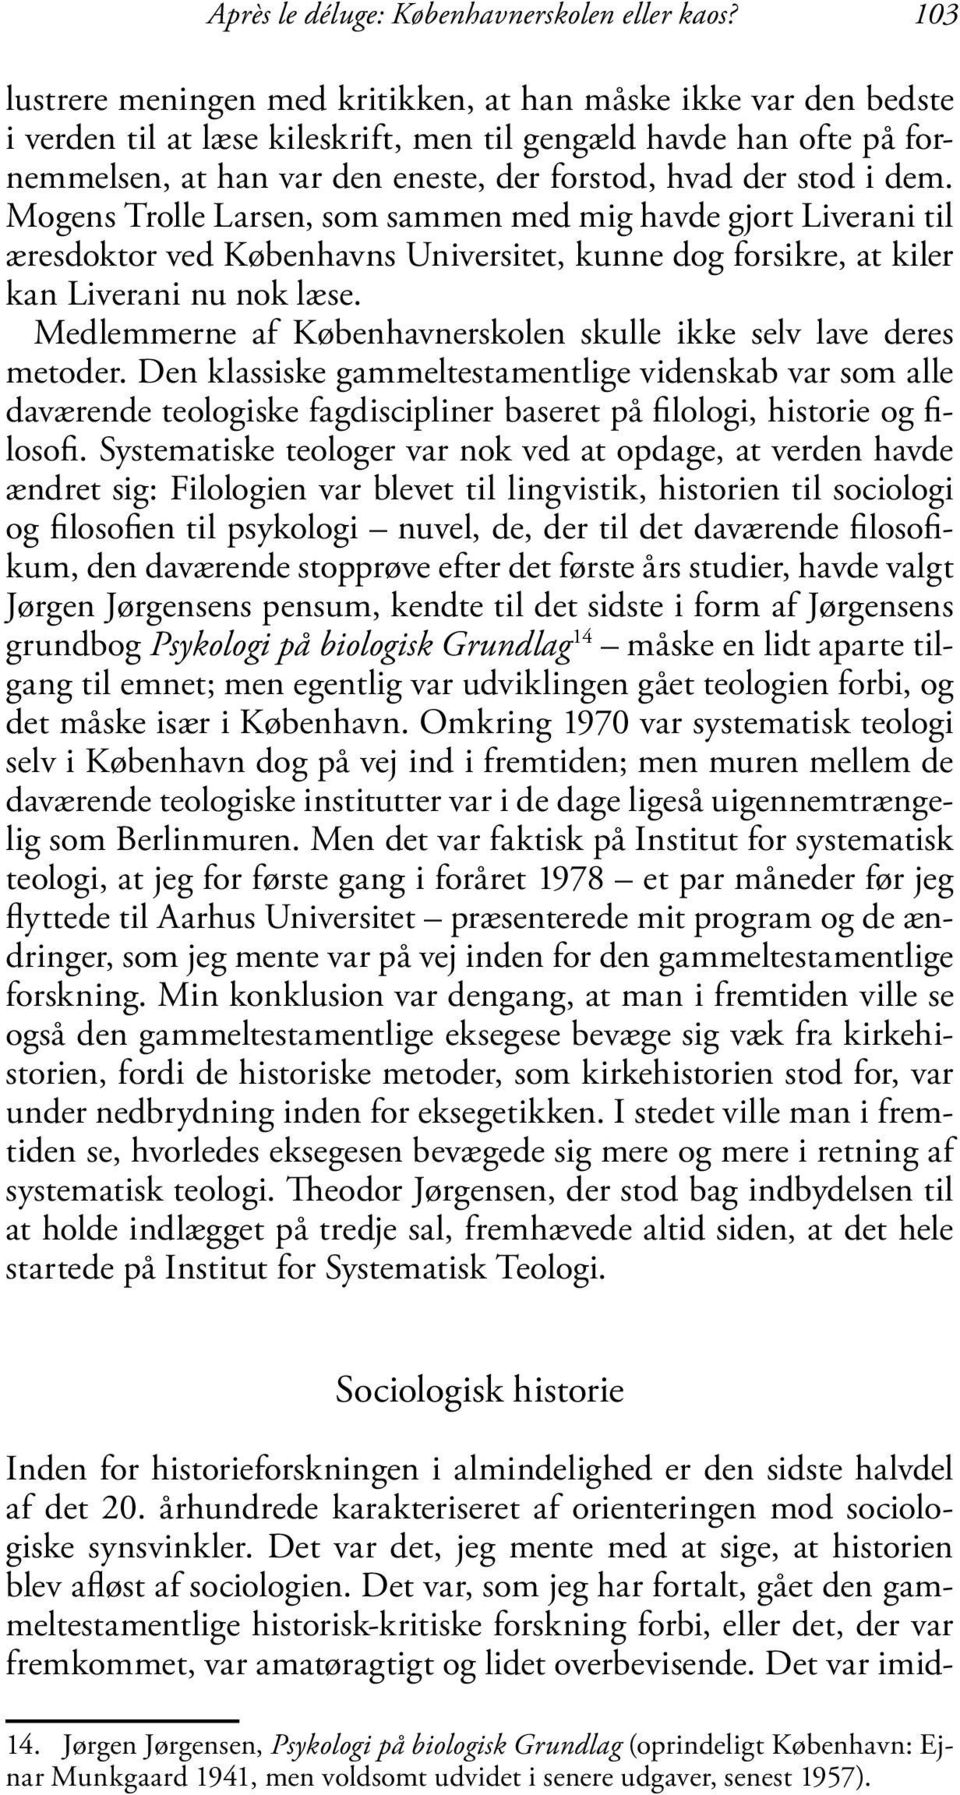 stod i dem. Mogens Trolle Larsen, som sammen med mig havde gjort Liverani til æresdoktor ved Københavns Universitet, kunne dog forsikre, at kiler kan Liverani nu nok læse.